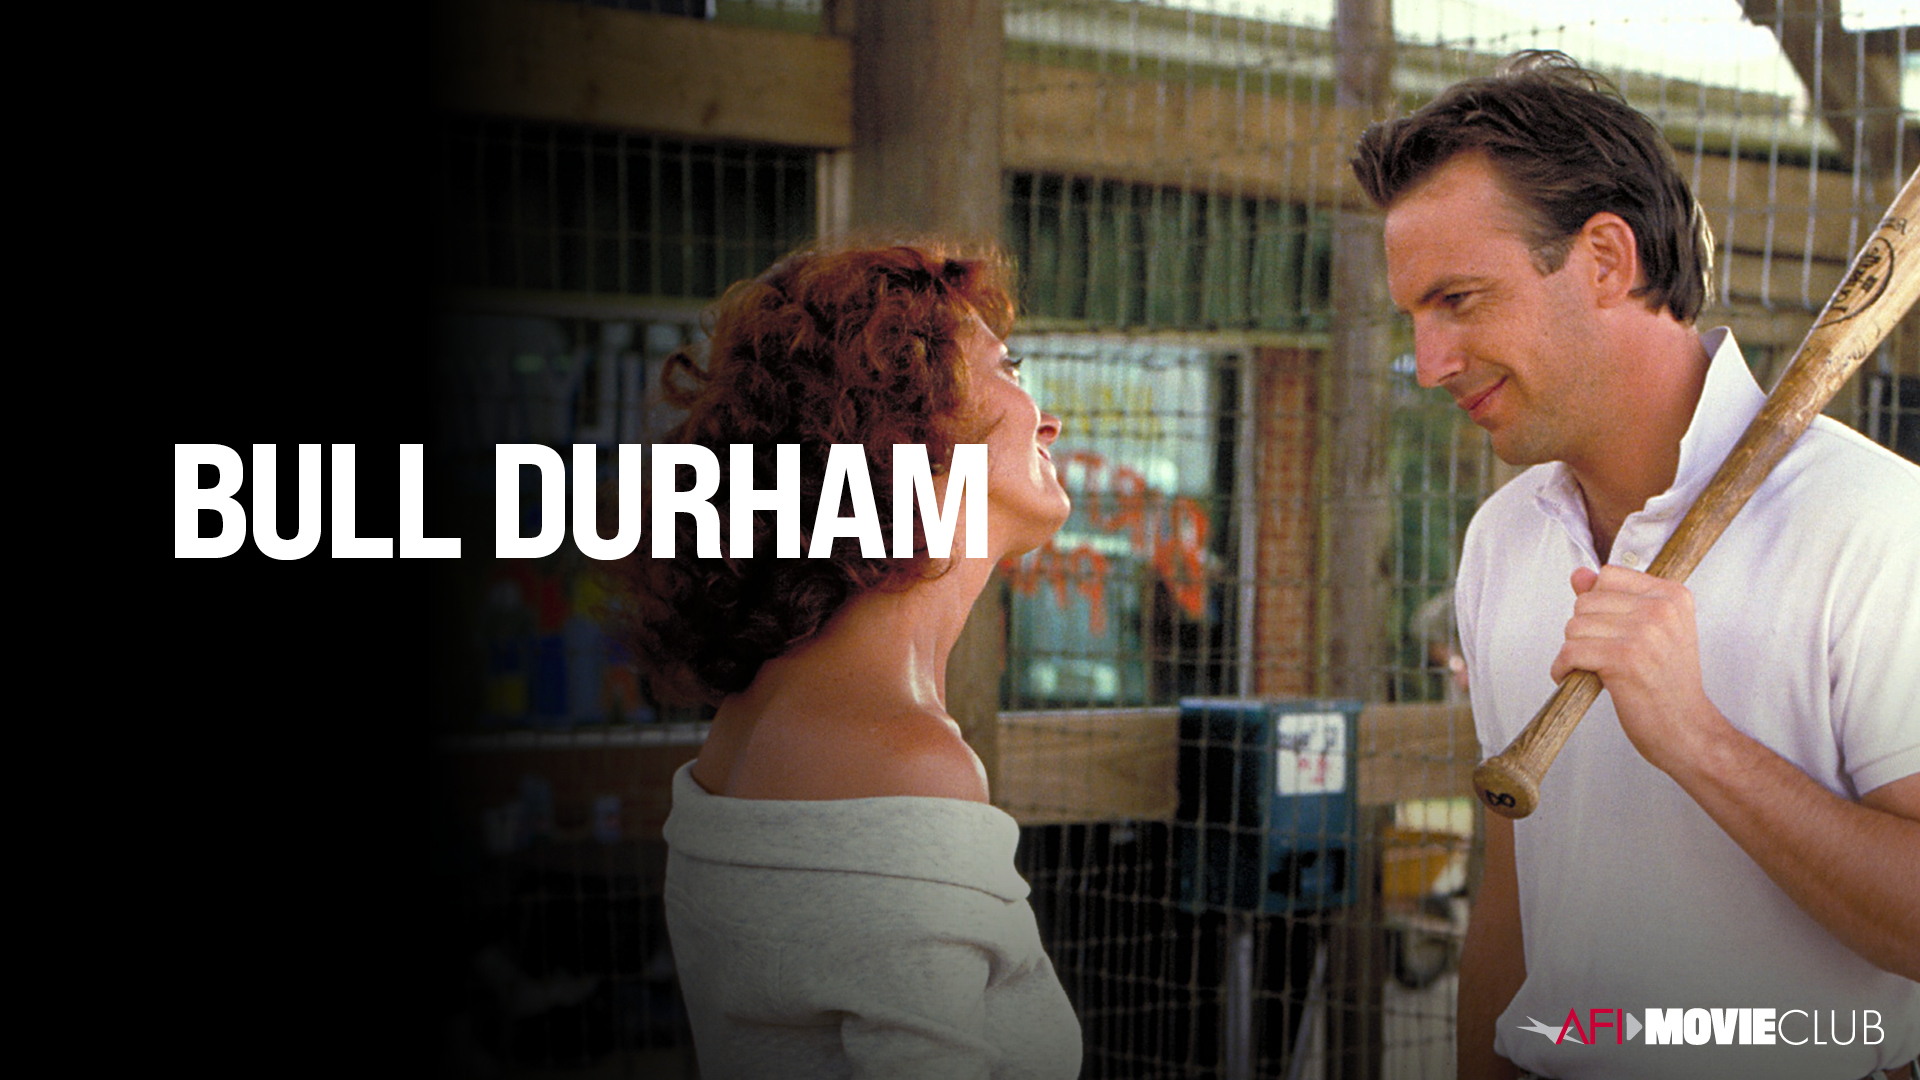 Bull Durham Film Still - Kevin Costner and Susan Sarandon